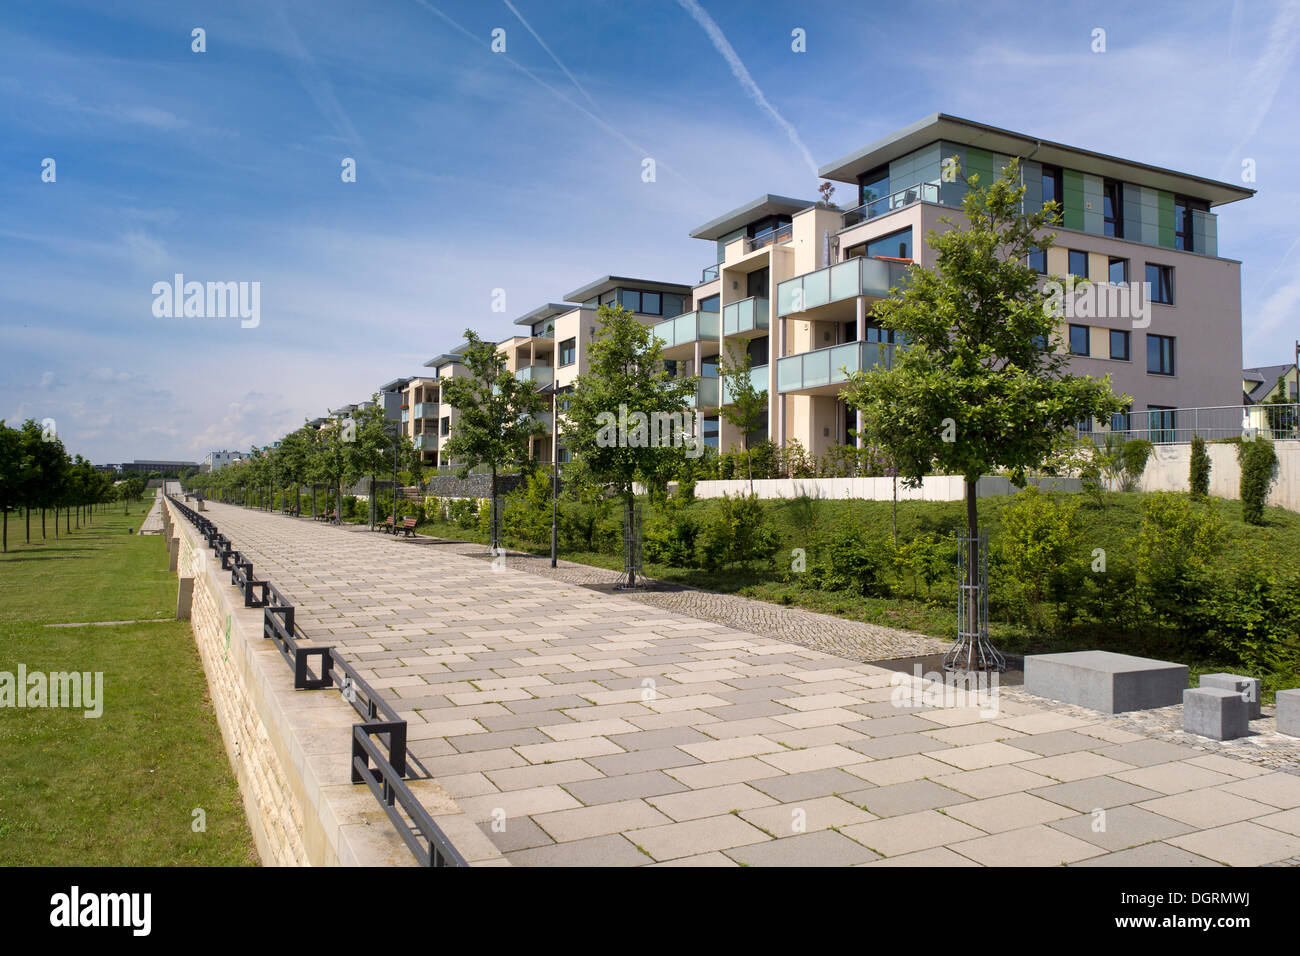 Architettura moderna in Frankfurt-Riedberg, area di sviluppo, il nuovo quartiere di Francoforte, deve essere completata entro il 2017 Foto Stock